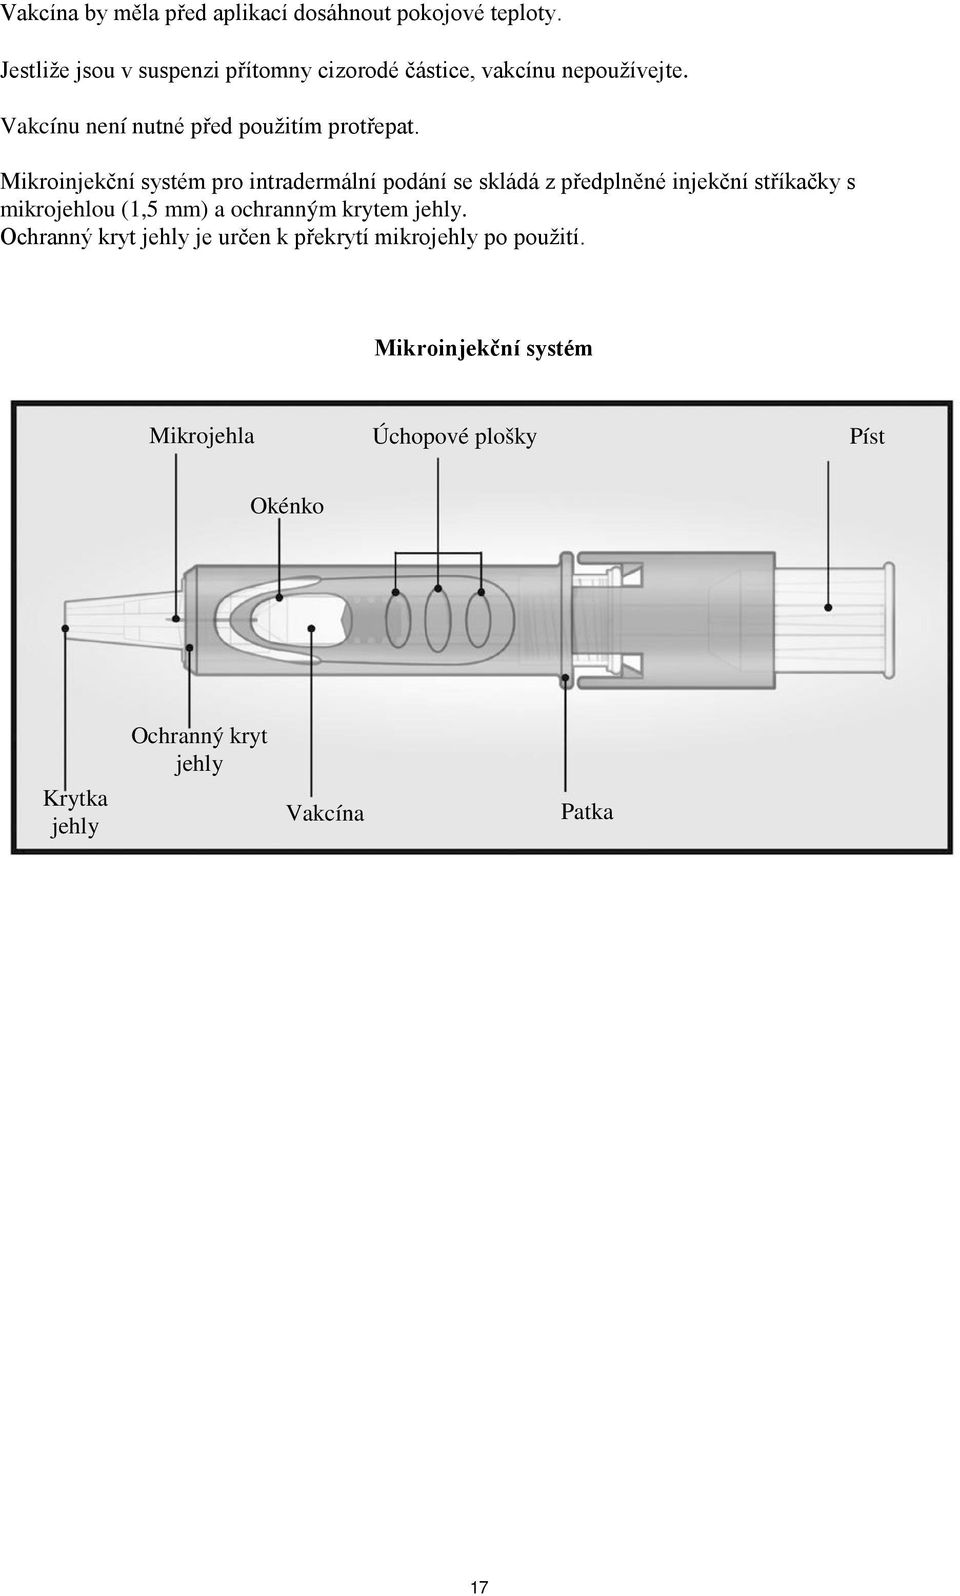 Mikroinjekční systém pro intradermální podání se skládá z předplněné injekční stříkačky s mikrojehlou (1,5 mm) a